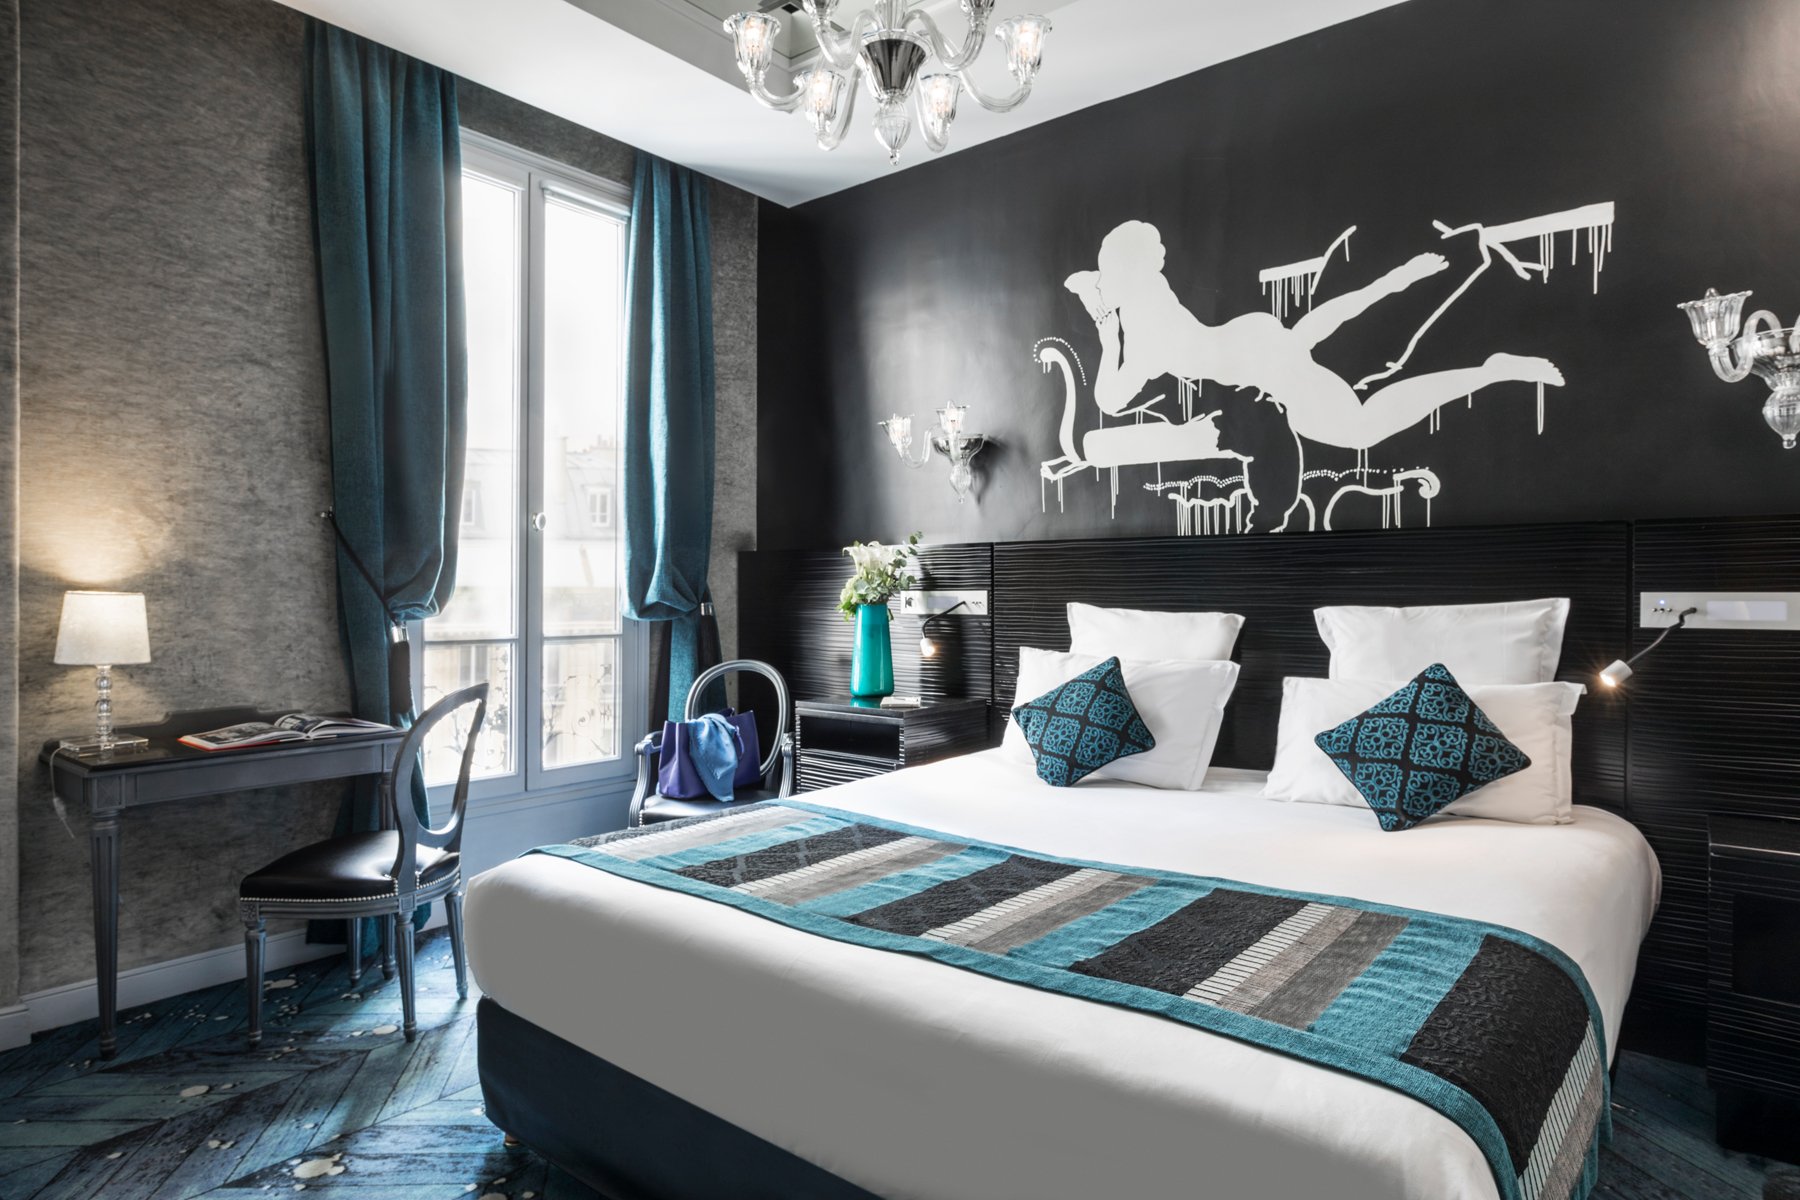 Maison Albar Hotels Le Champs-Elysées | Romantic Parisian Stay